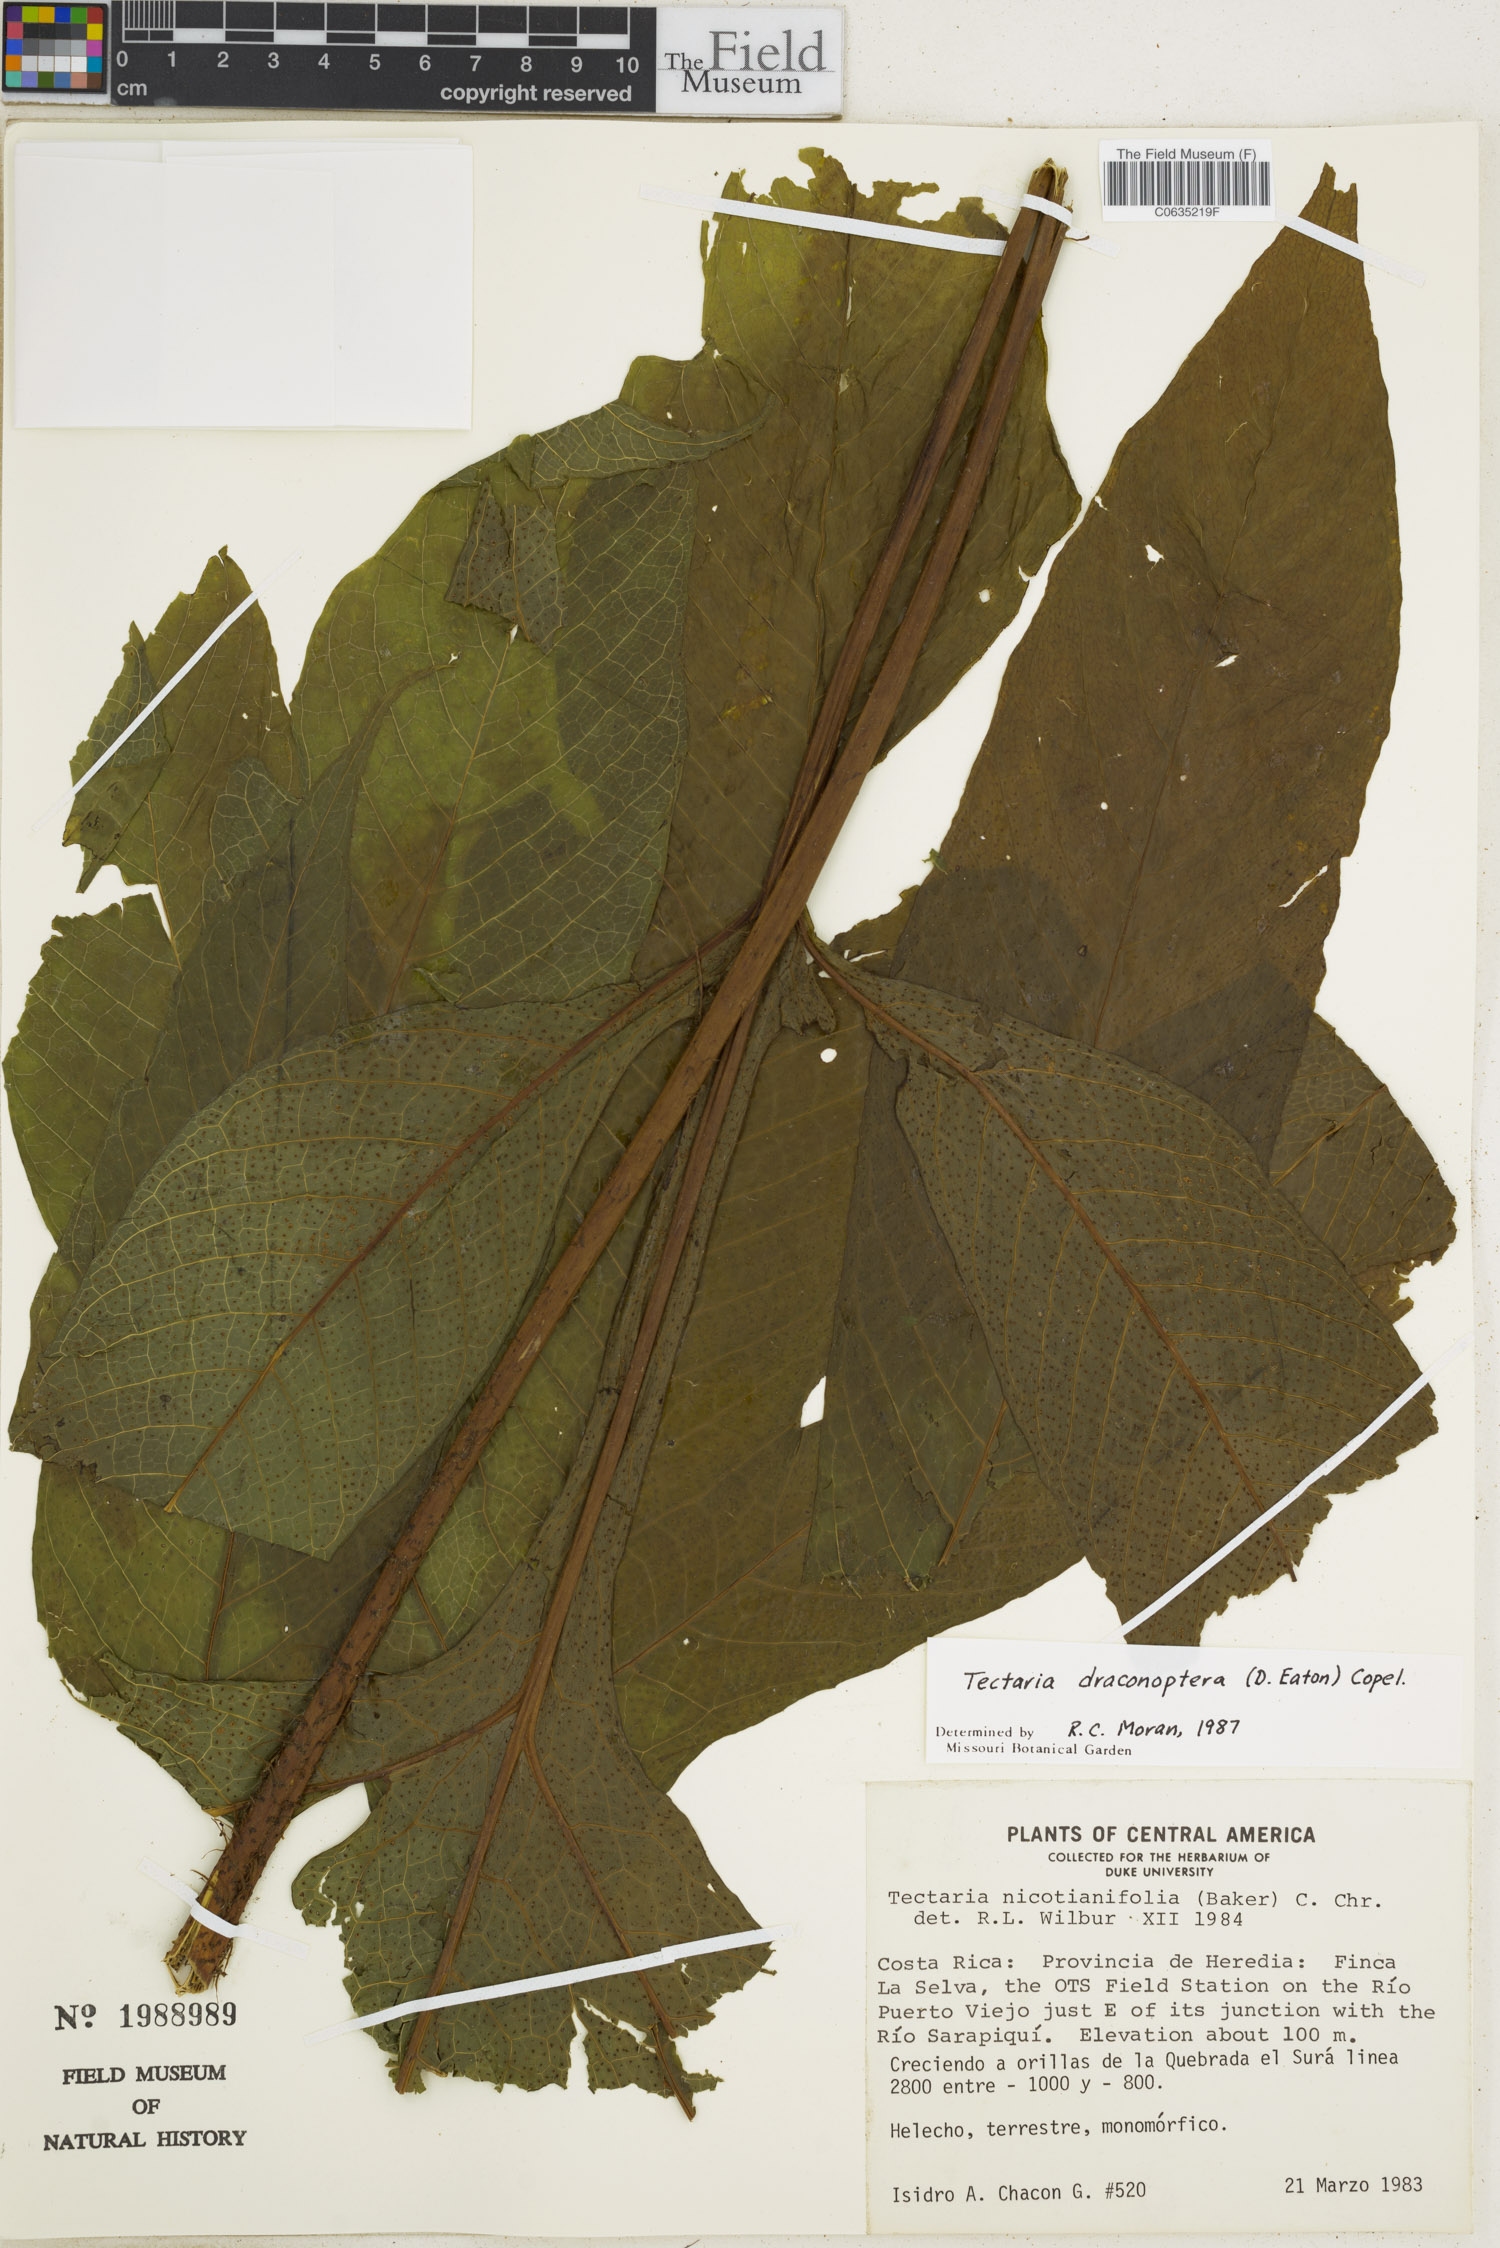 Tectaria draconoptera image